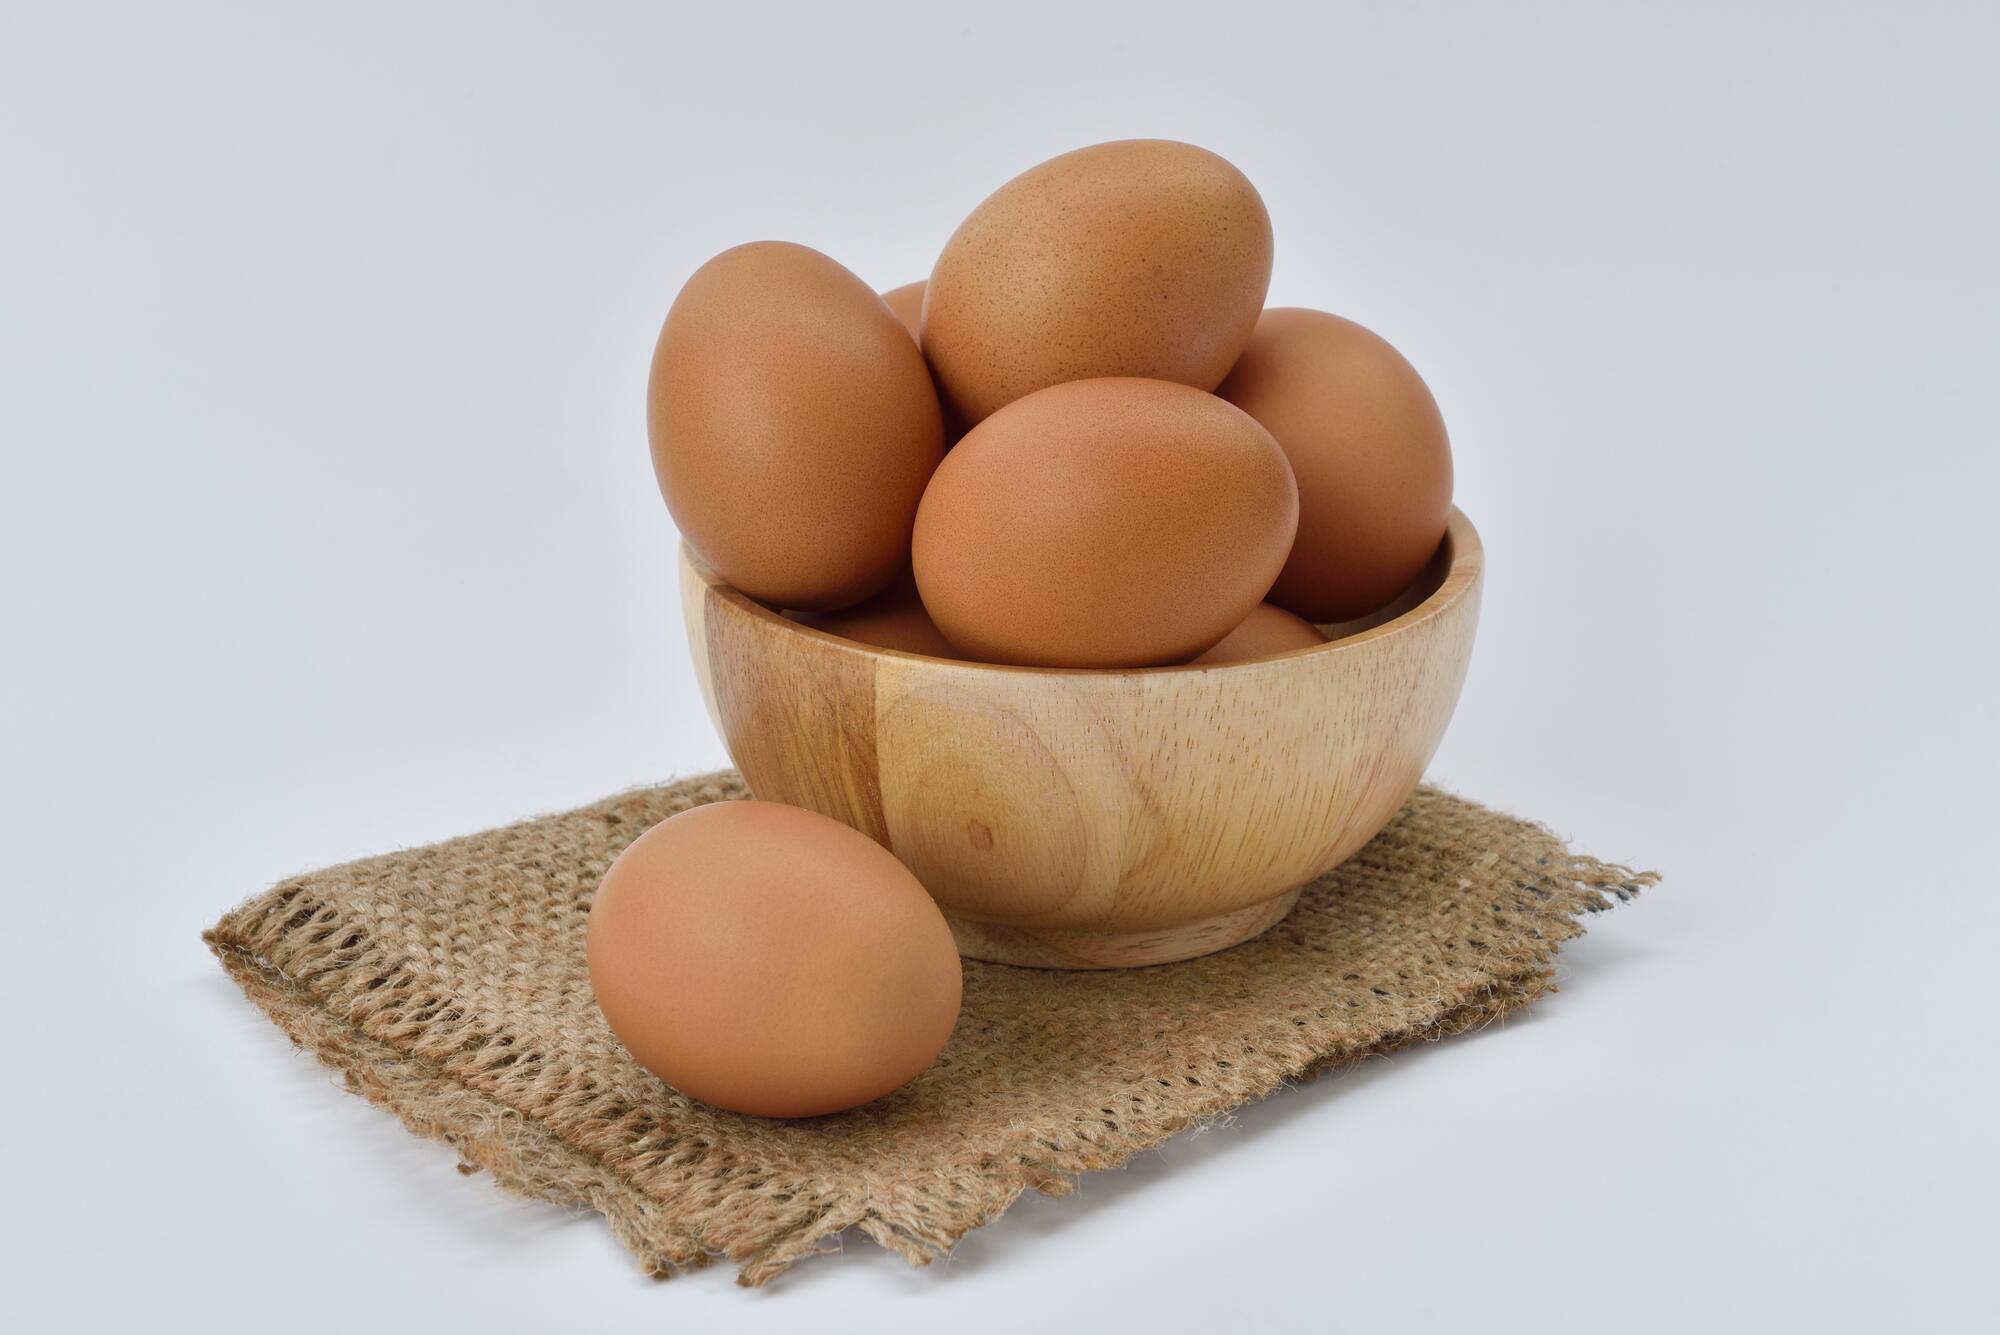 Homemade eggs